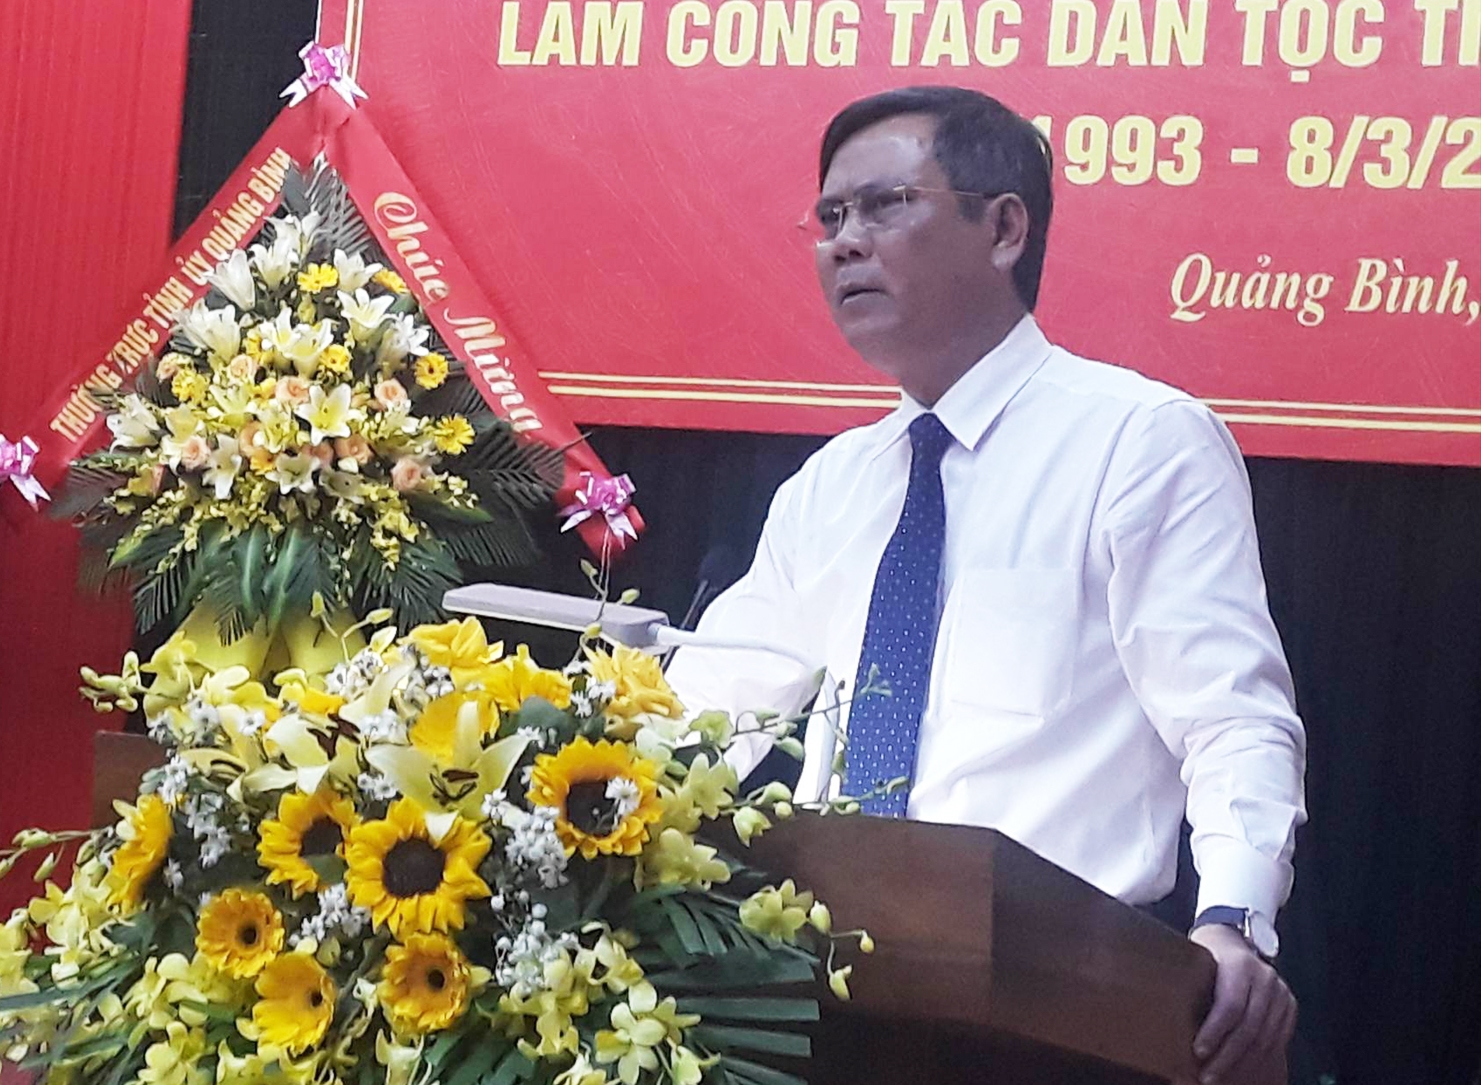 Ông Trần Thắng - Phó Bí thư Thường trực, Chủ tịch UBND tỉnh Quảng Bình phát biểu tại buổi lễ